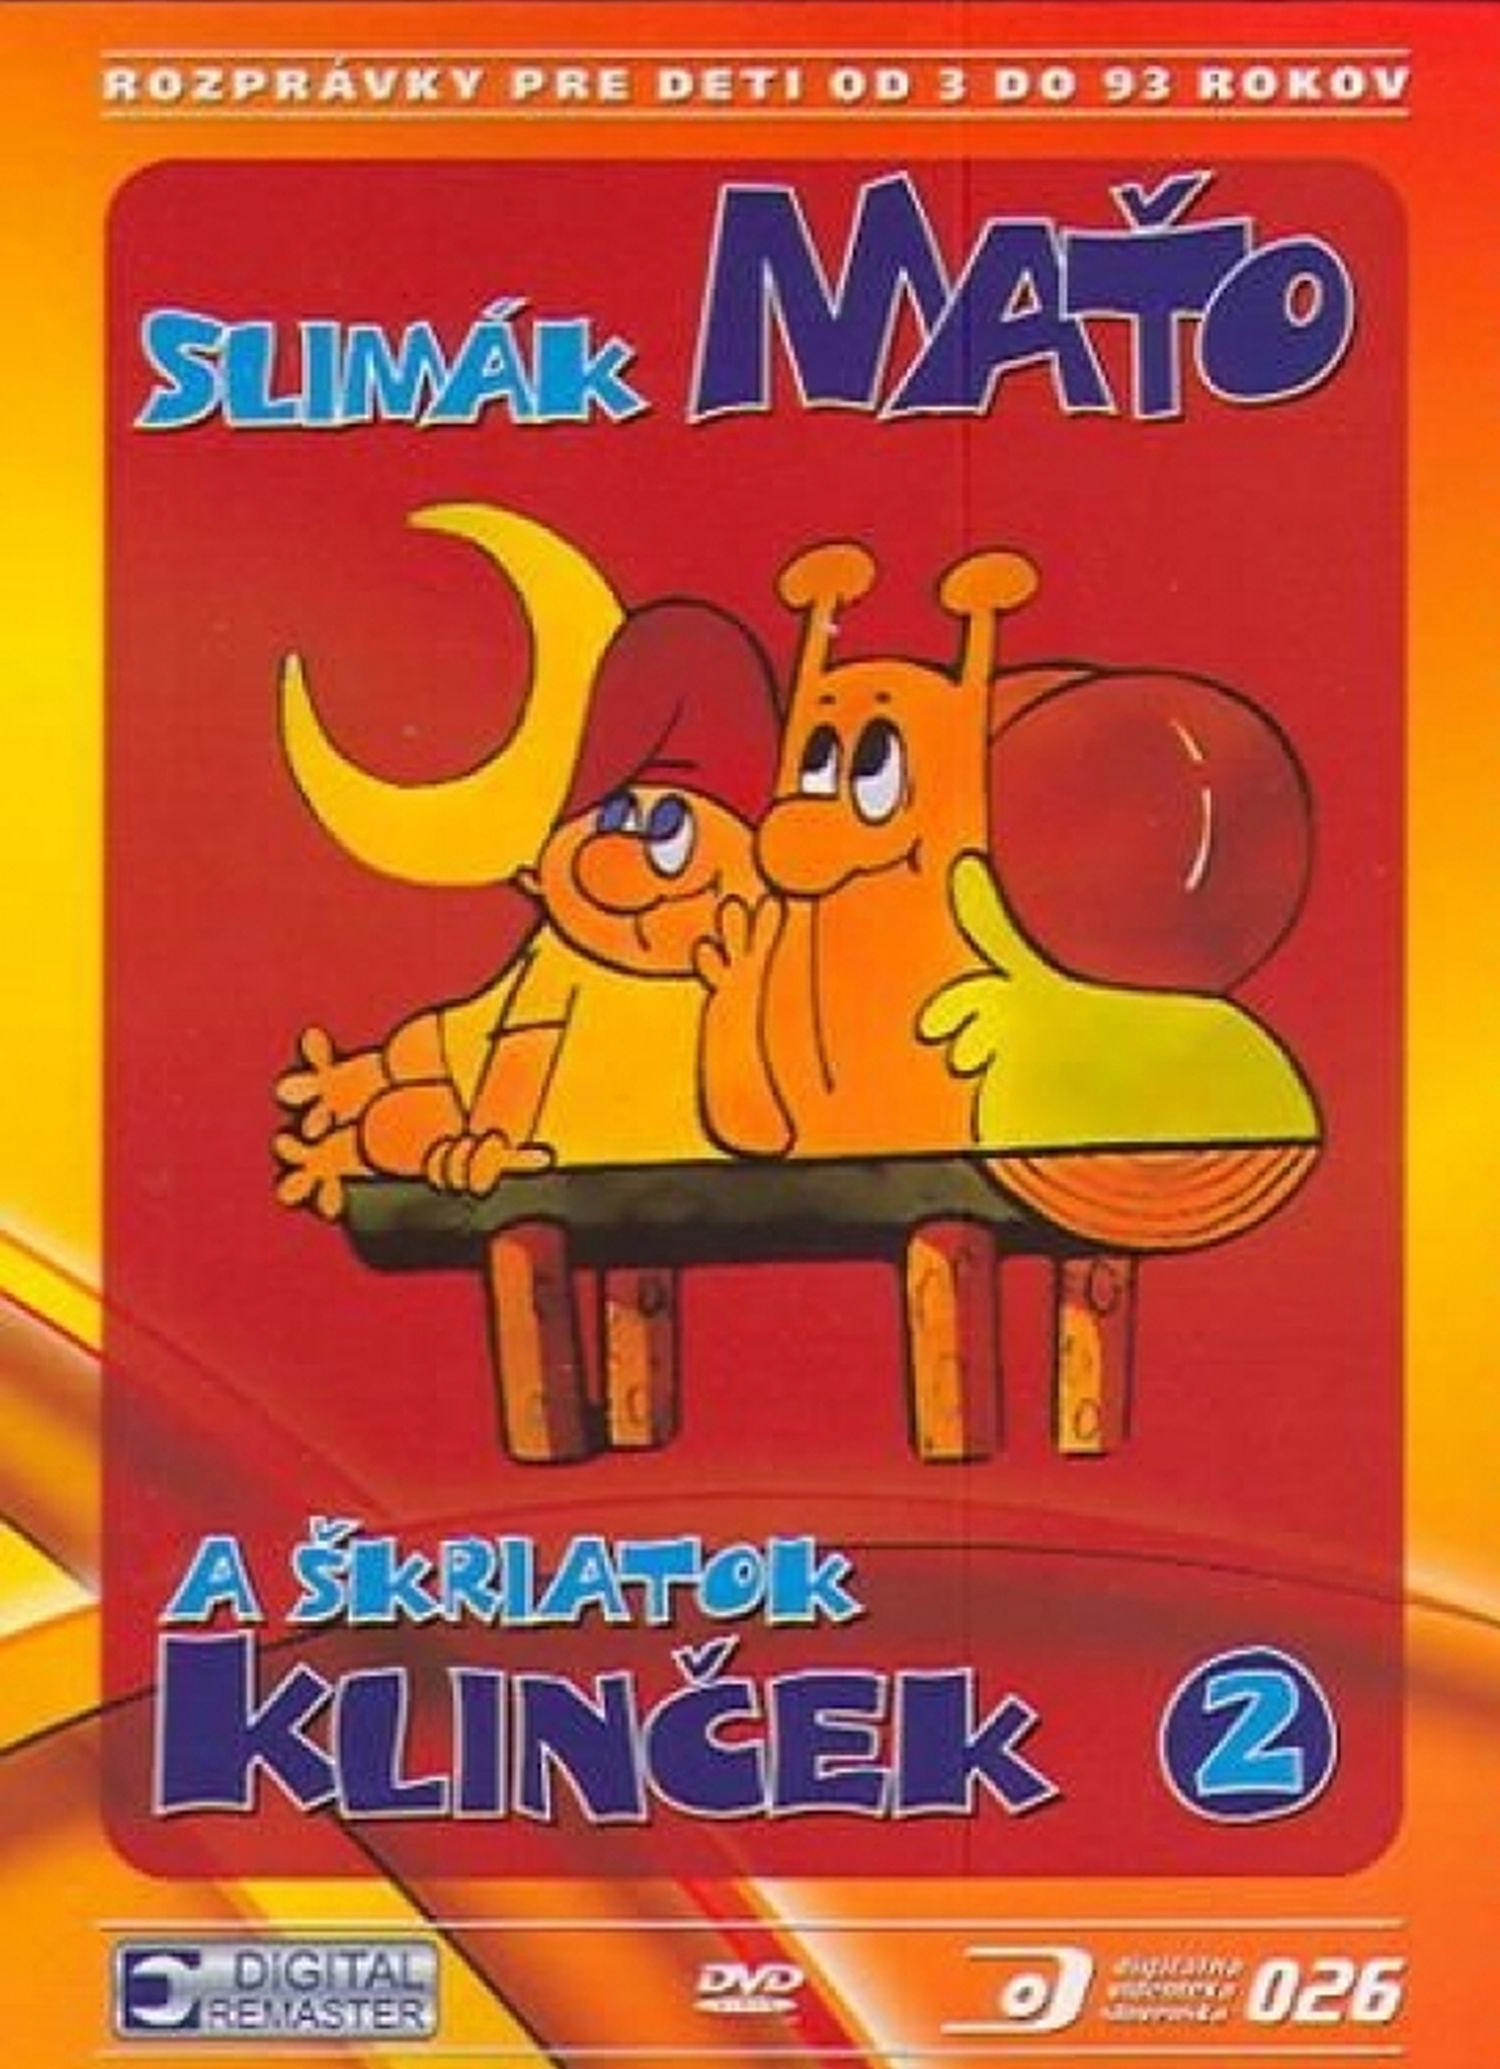 CD Shop - ROZPRAVKA SLIMAK MATO II